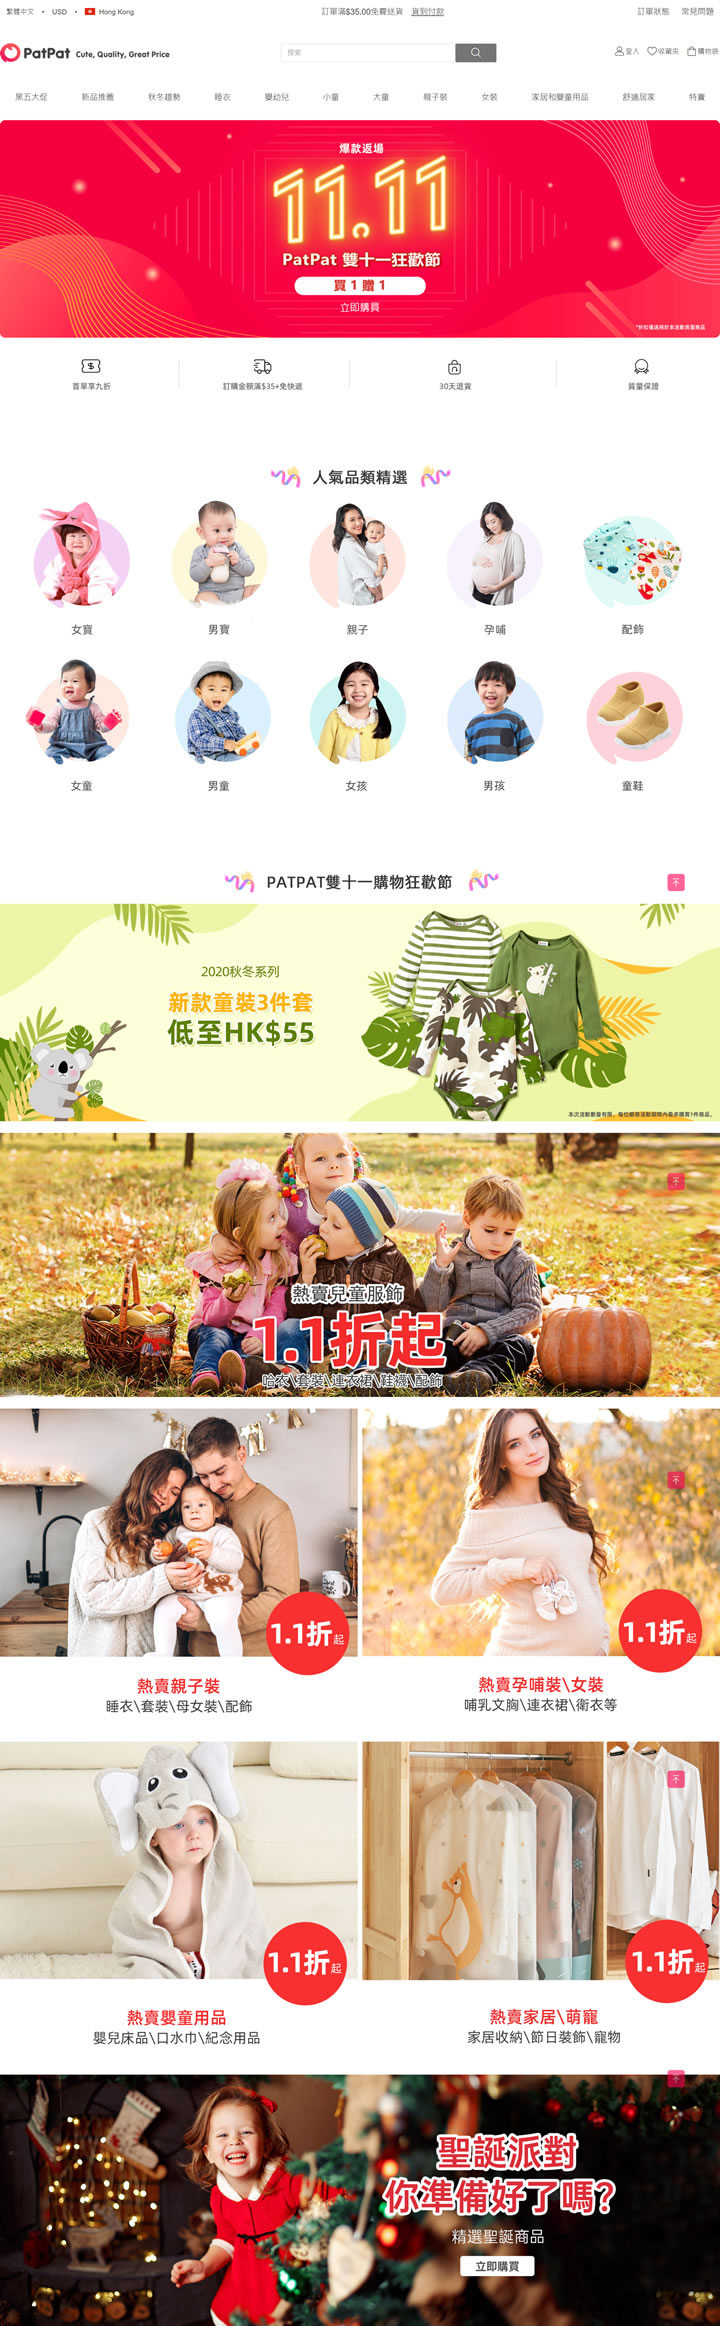 宝贝时尚乐园：PatPat香港，婴童服饰和亲子全家装在线购物